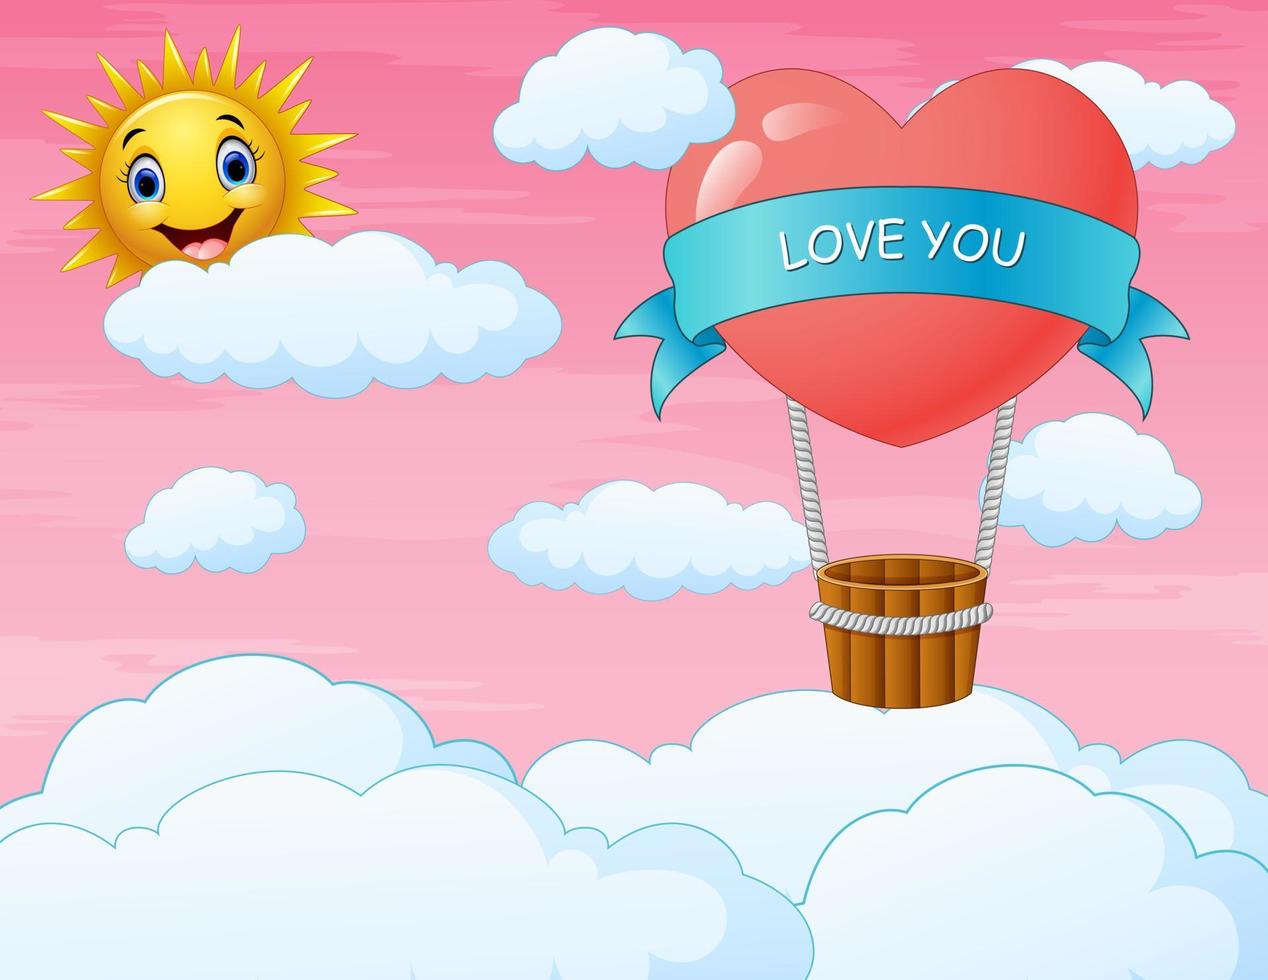 alla hjärtans dag-kort med hjärtat ballong flyger på himlen vektor